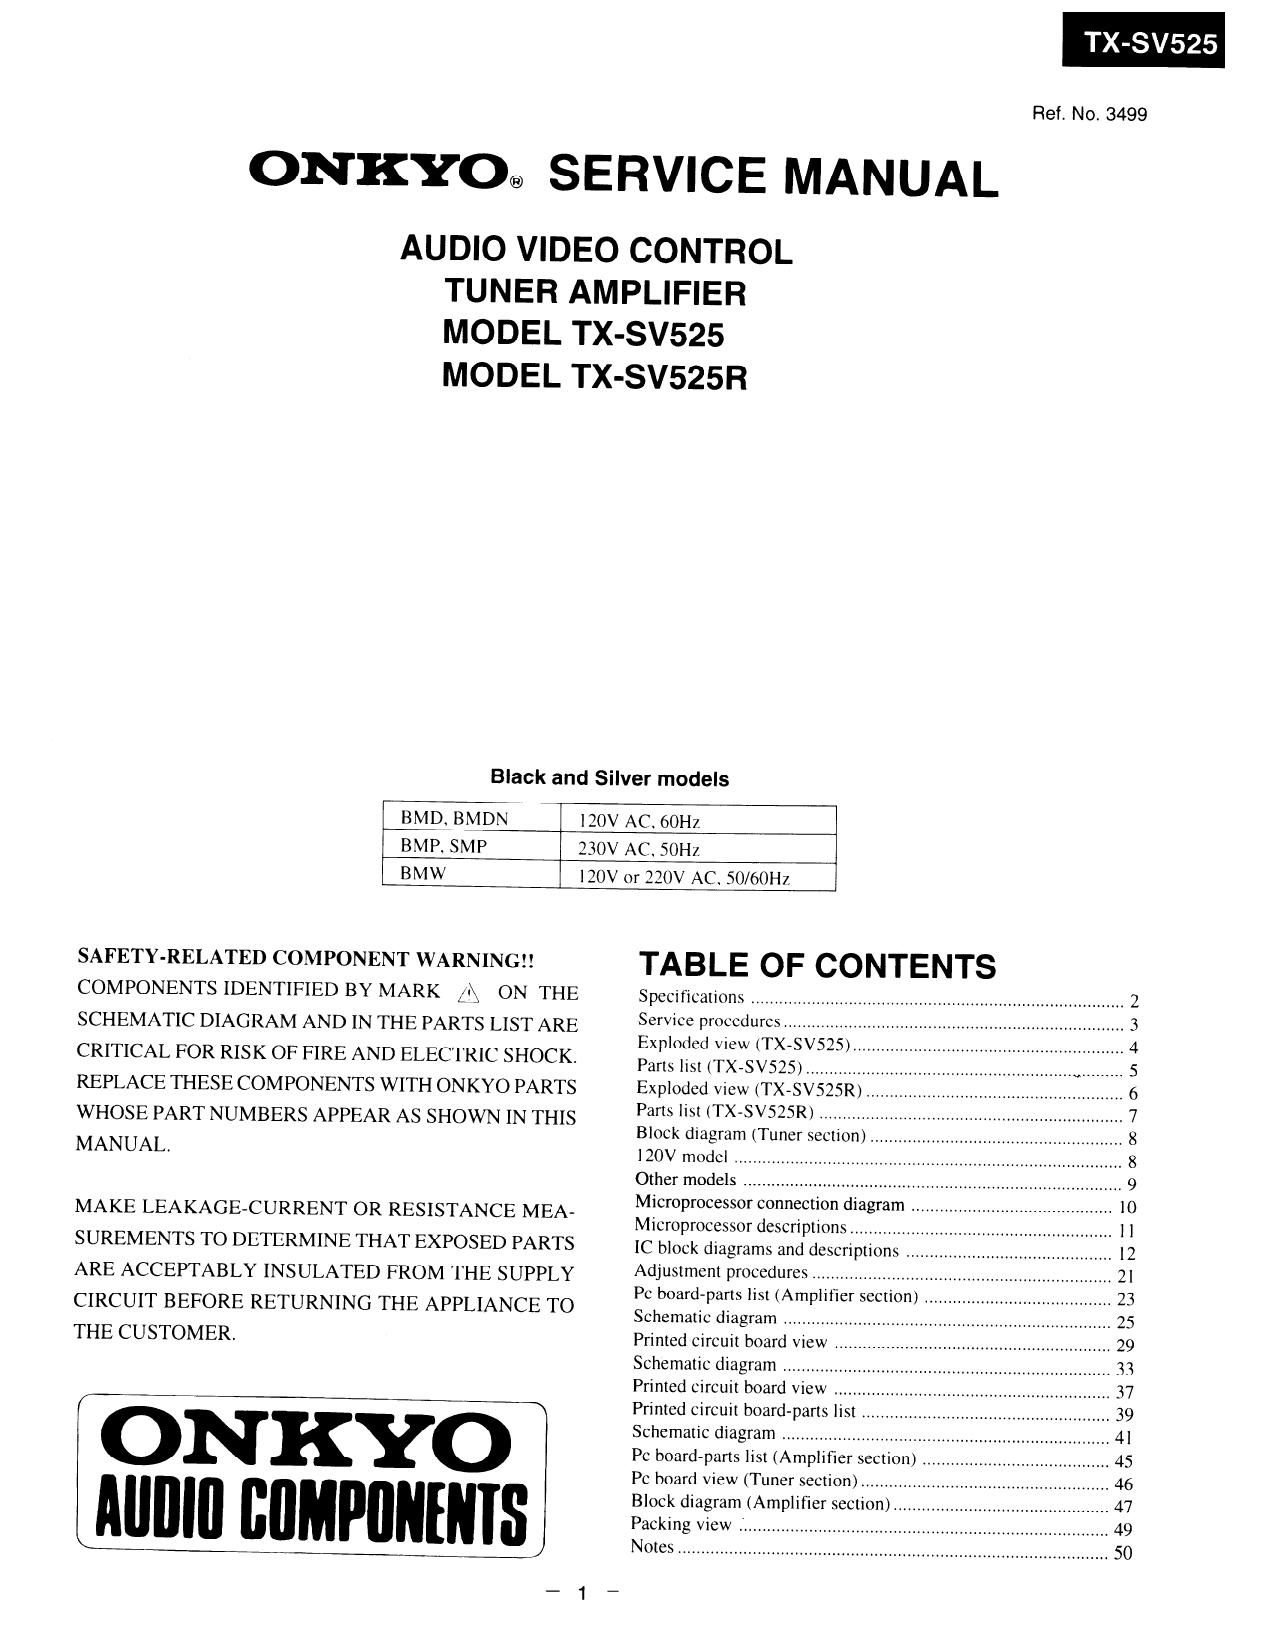 Onkyo TXSV 525 Service Manual